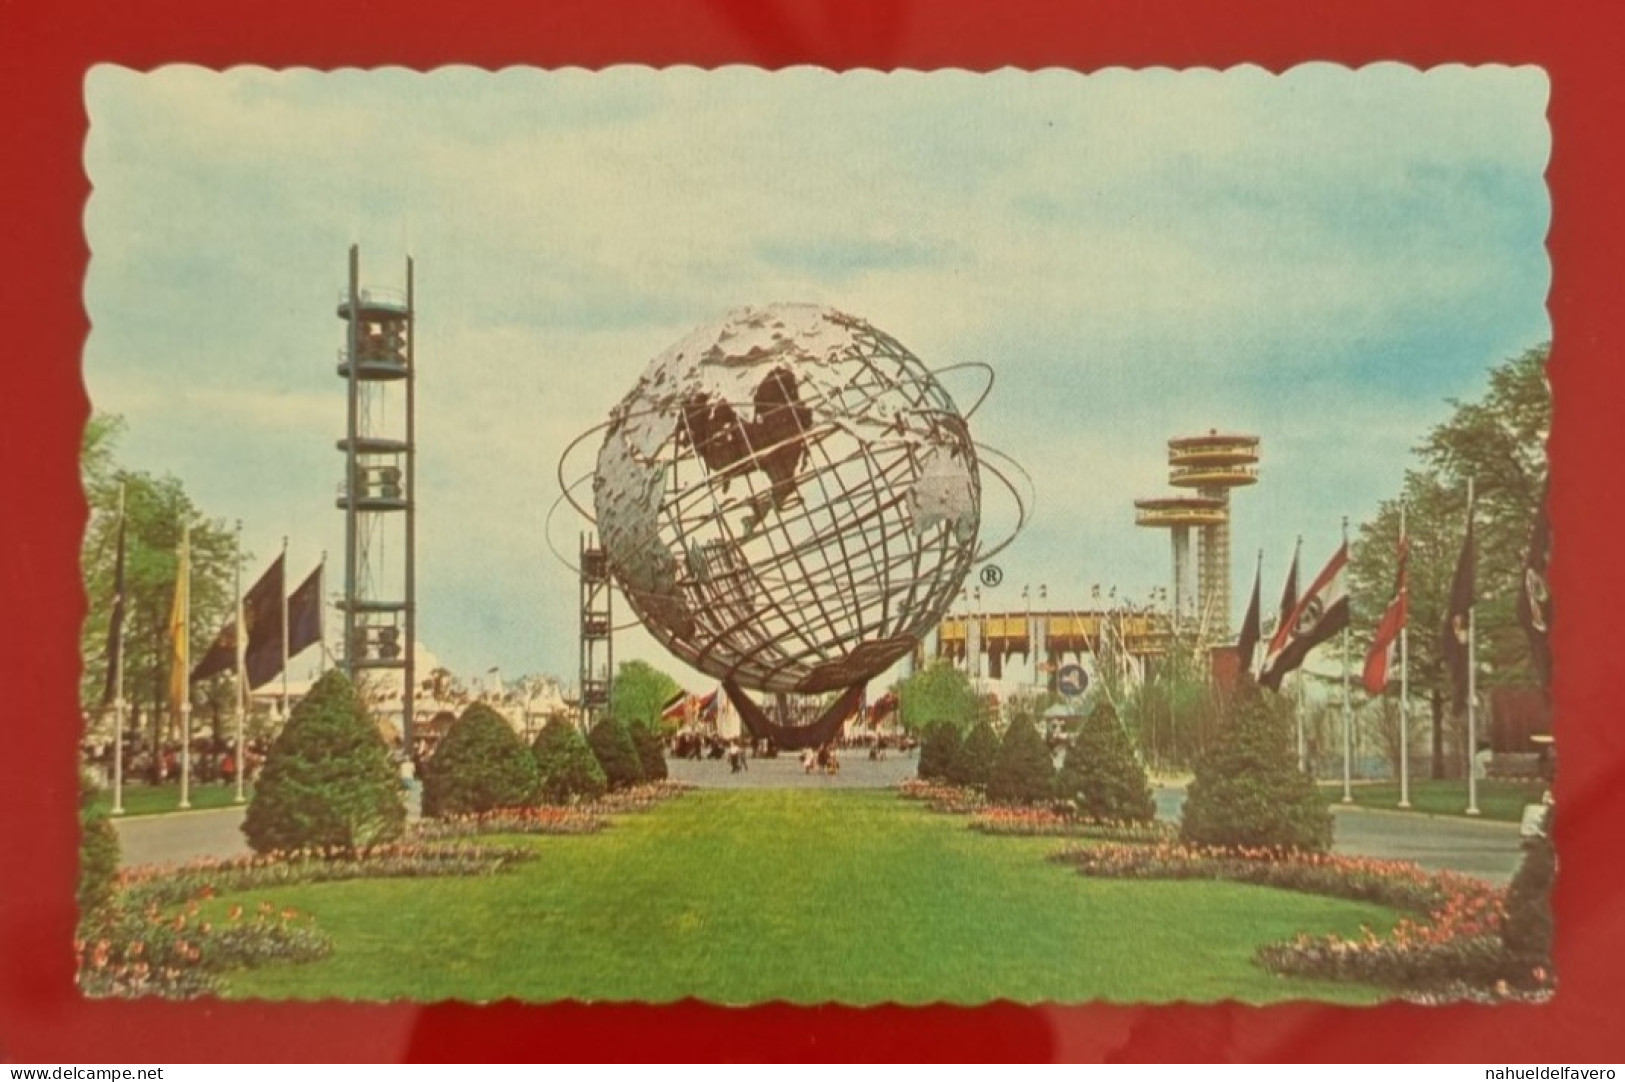 Uncirculated Postcard - USA - NY, NEW YORK WORLD'S FAIR 1964-65 - UNISPHERE - Ausstellungen